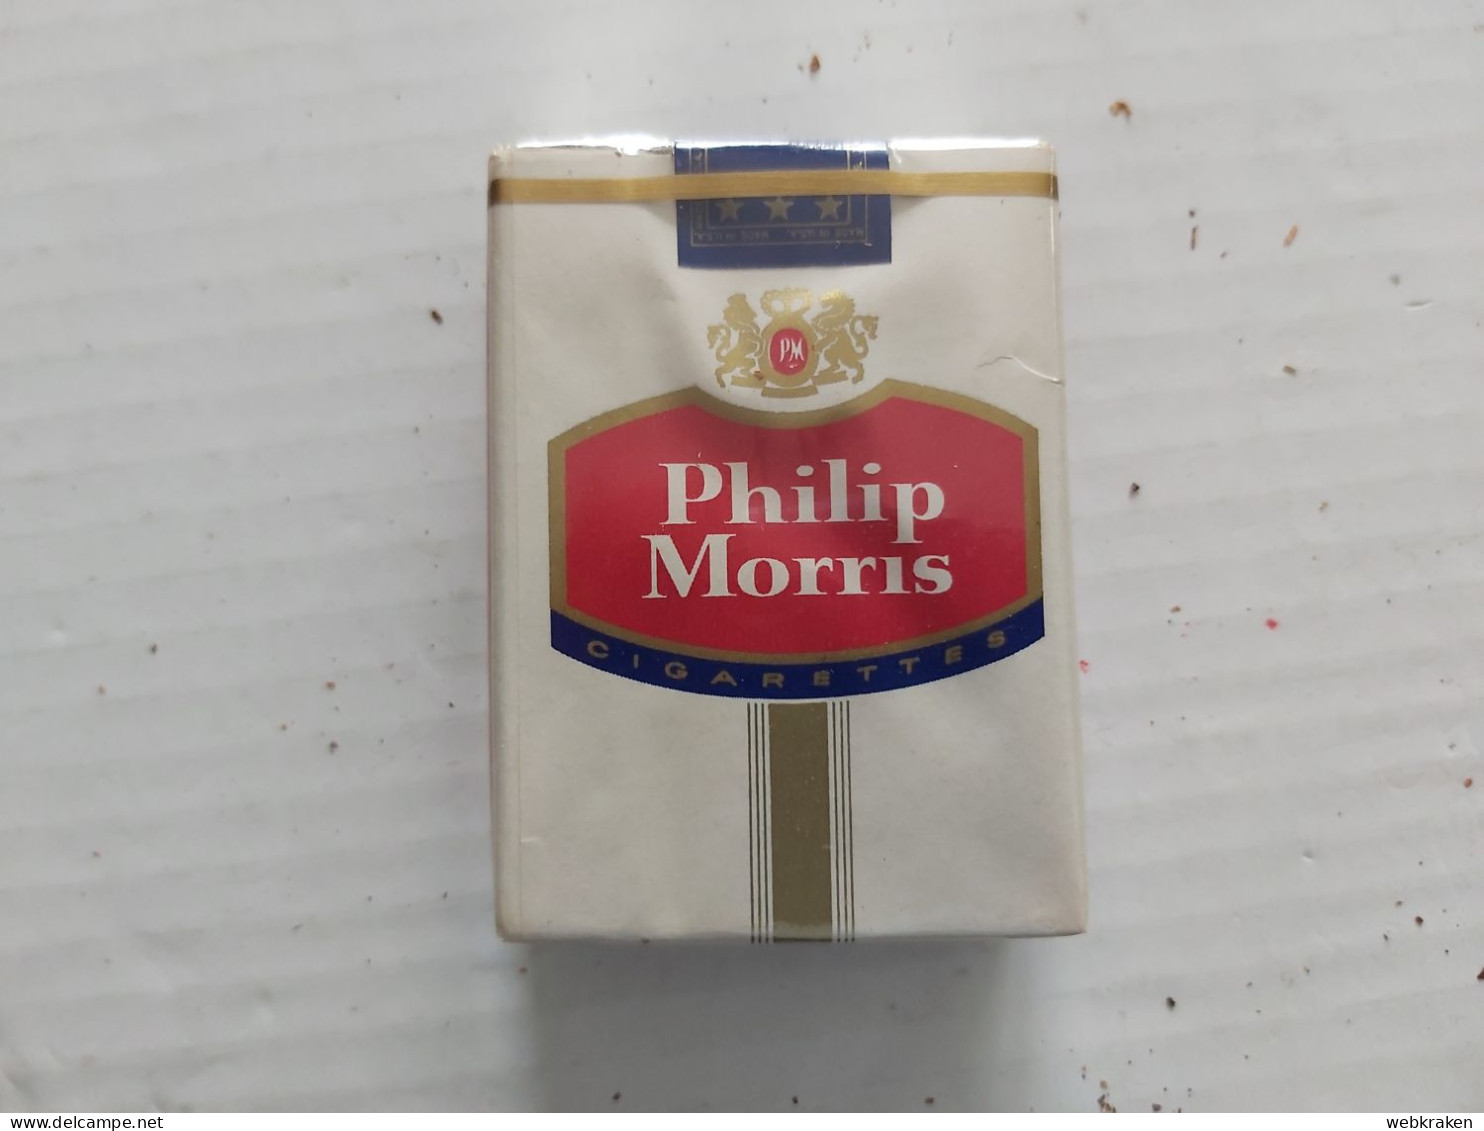 PACCHETTO SIGARETTE PIENO TABACCO FUMO TABACS WITH ORIGINAL CIGARETTES TOBACCO MARCA PHILIP MORRIS U.S.A. CON SIGARETTE - Fume-Cigarettes